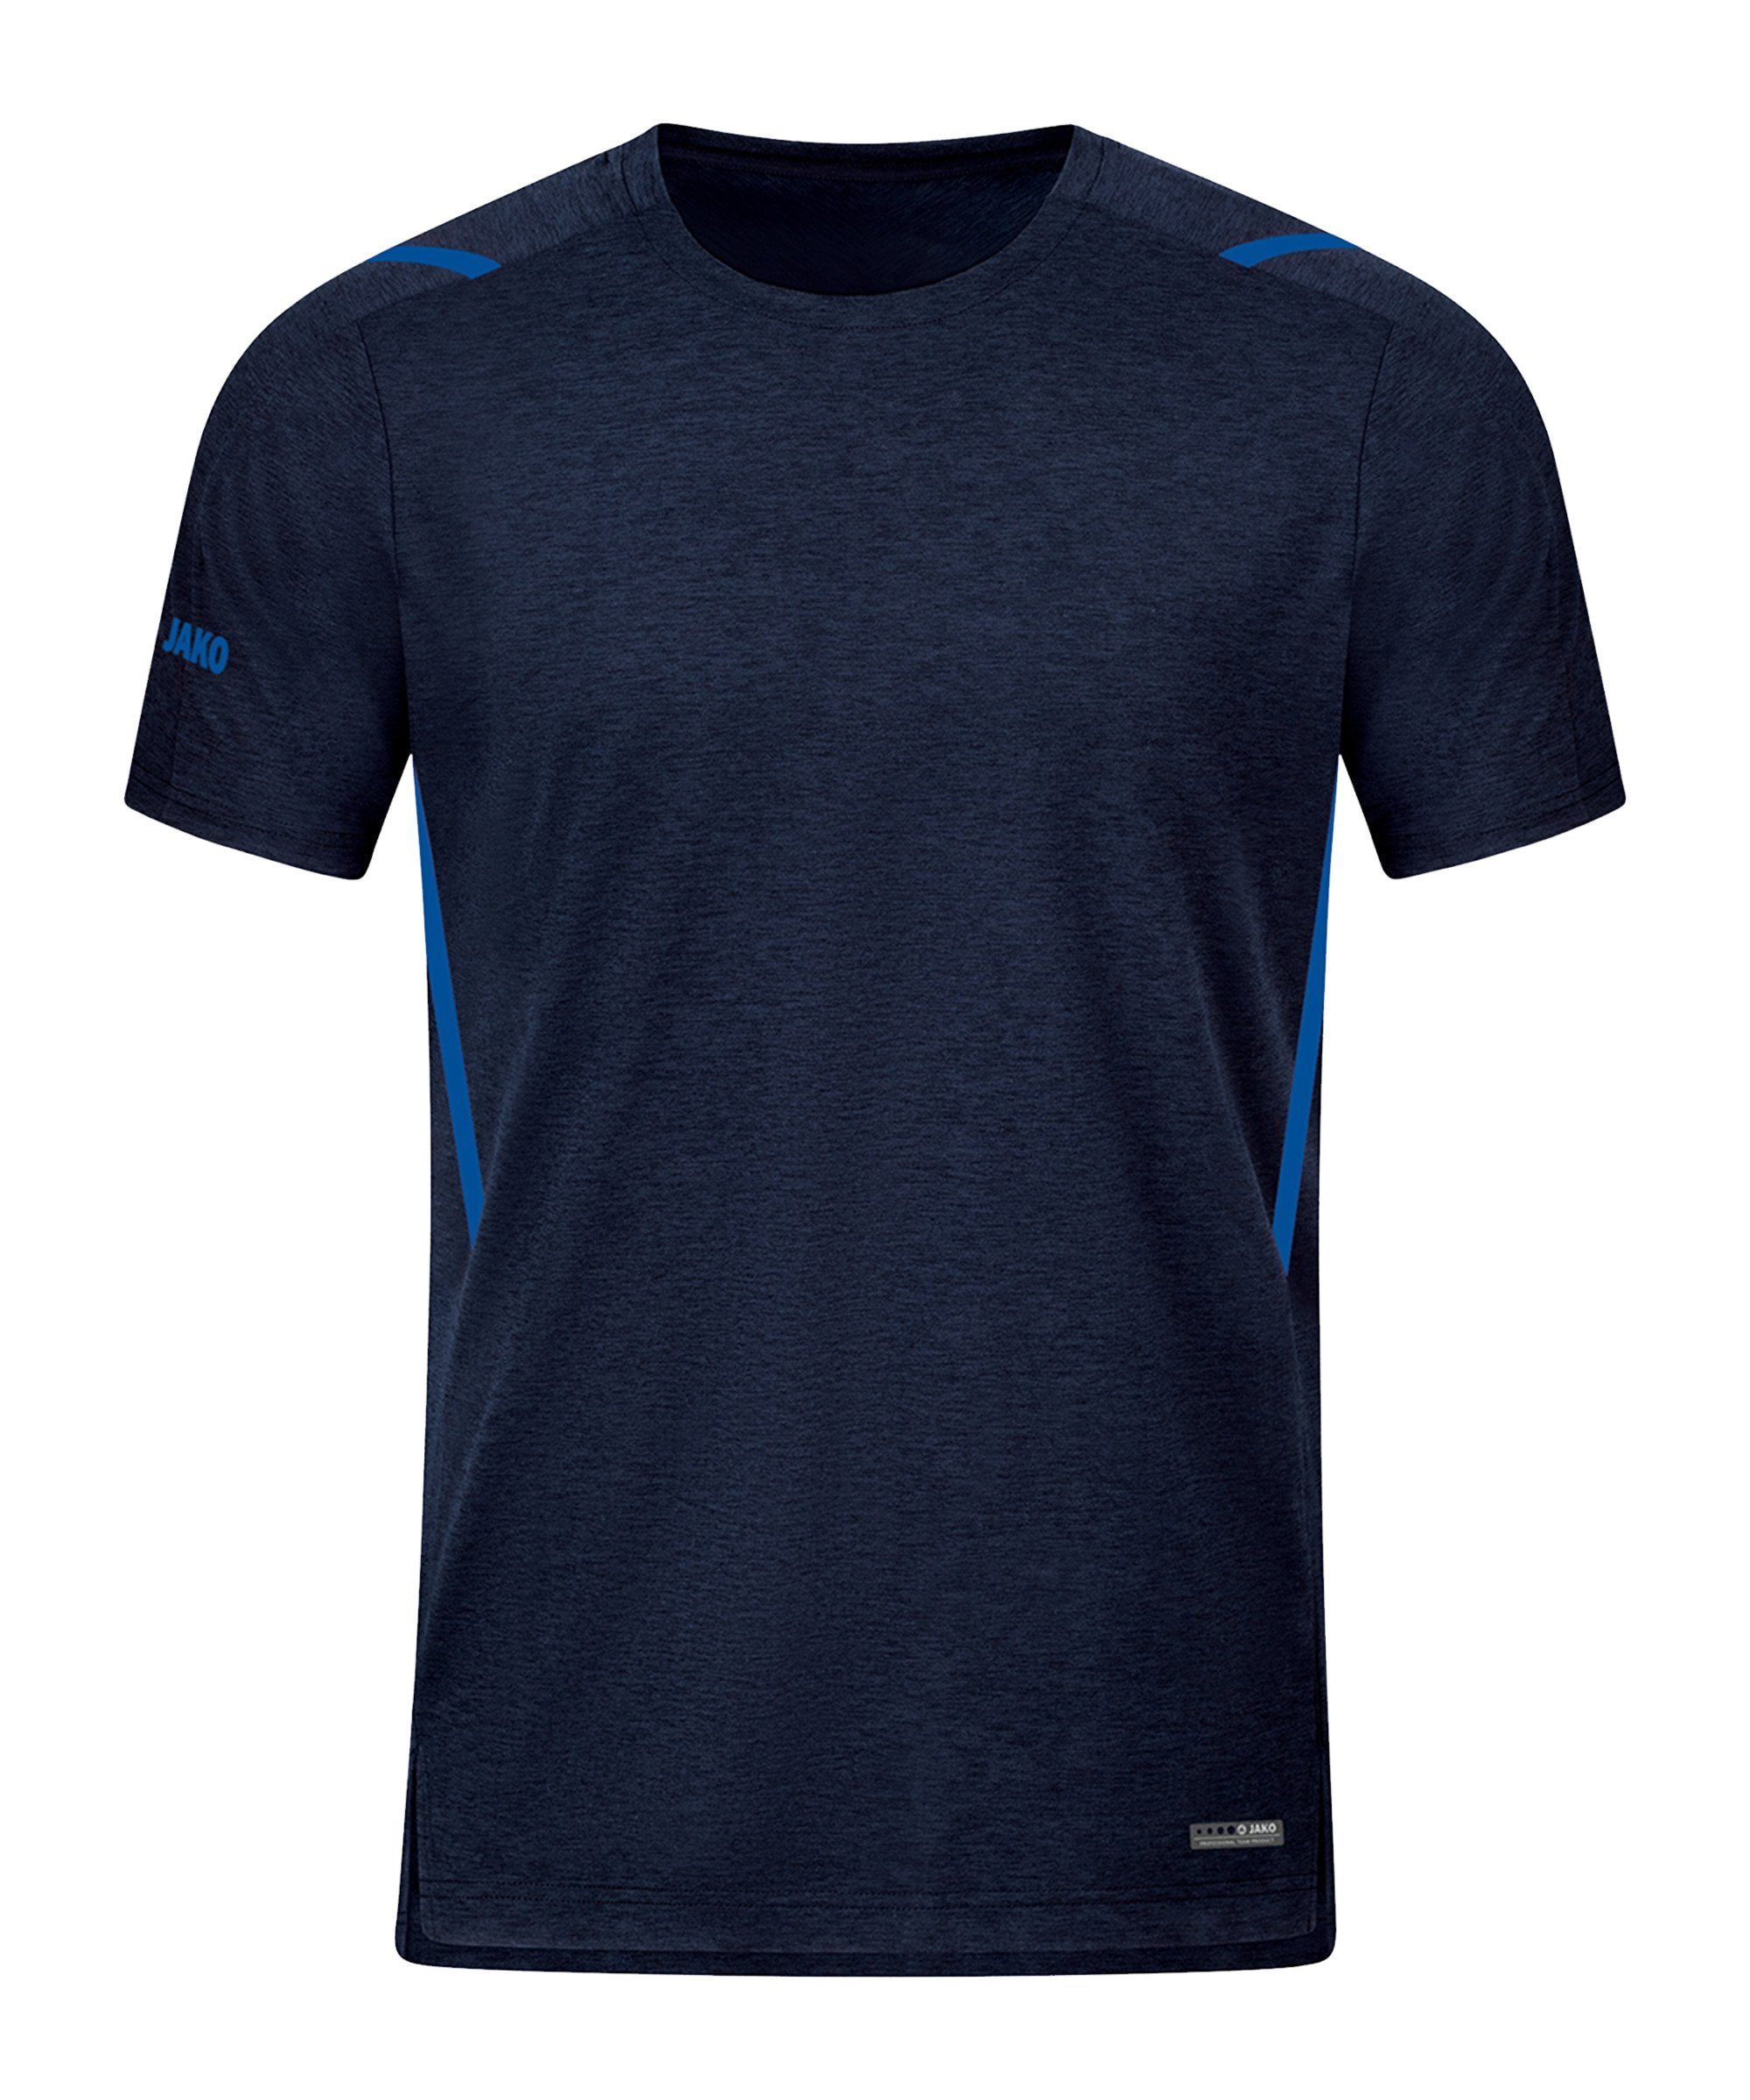 Jako T-Shirt default blaublau Freizeit T-Shirt Challenge